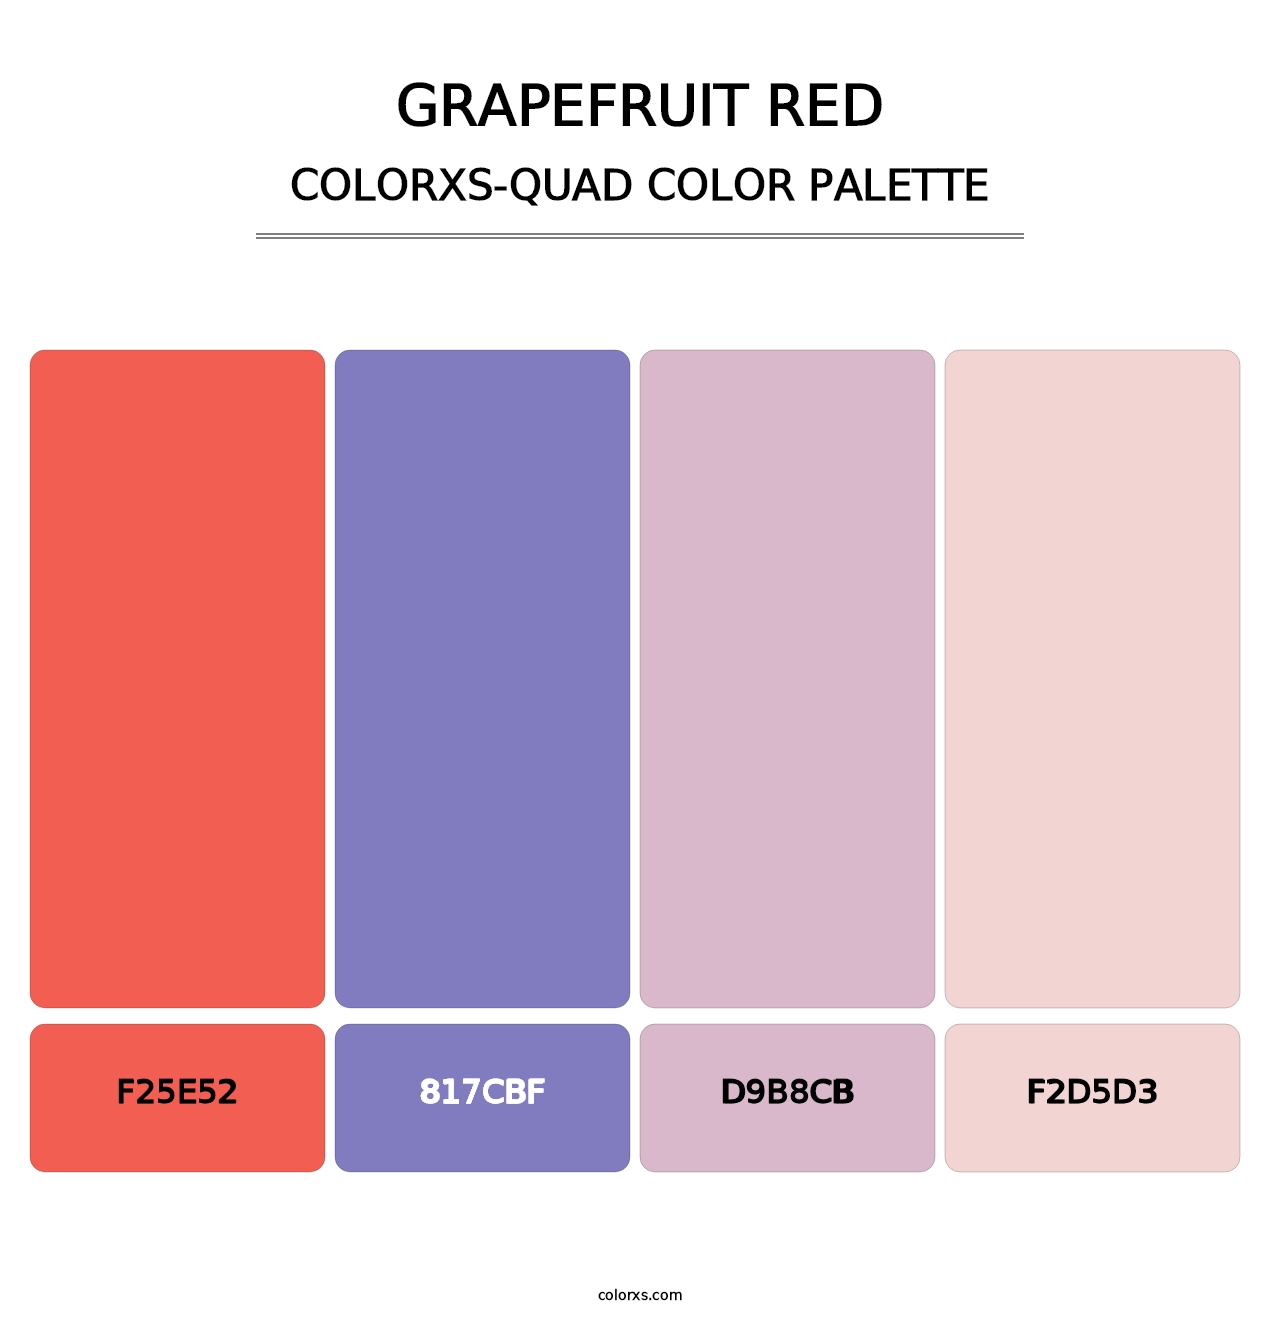 Grapefruit Red - Colorxs Quad Palette